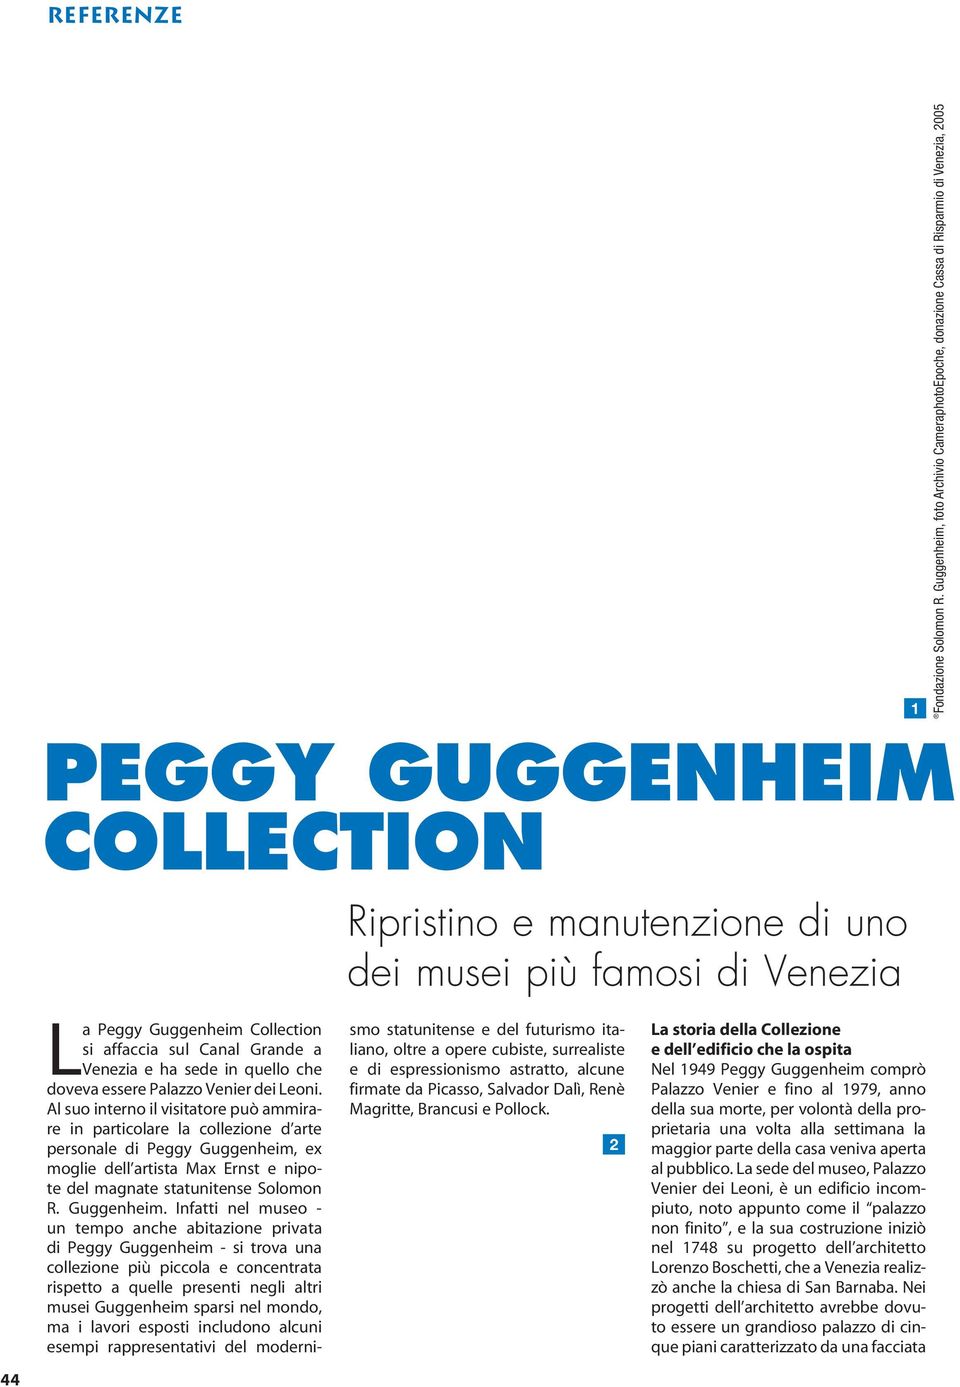 Peggy Guggenheim Collection si affaccia sul Canal Grande a Venezia e ha sede in quello che doveva essere Palazzo Venier dei Leoni.